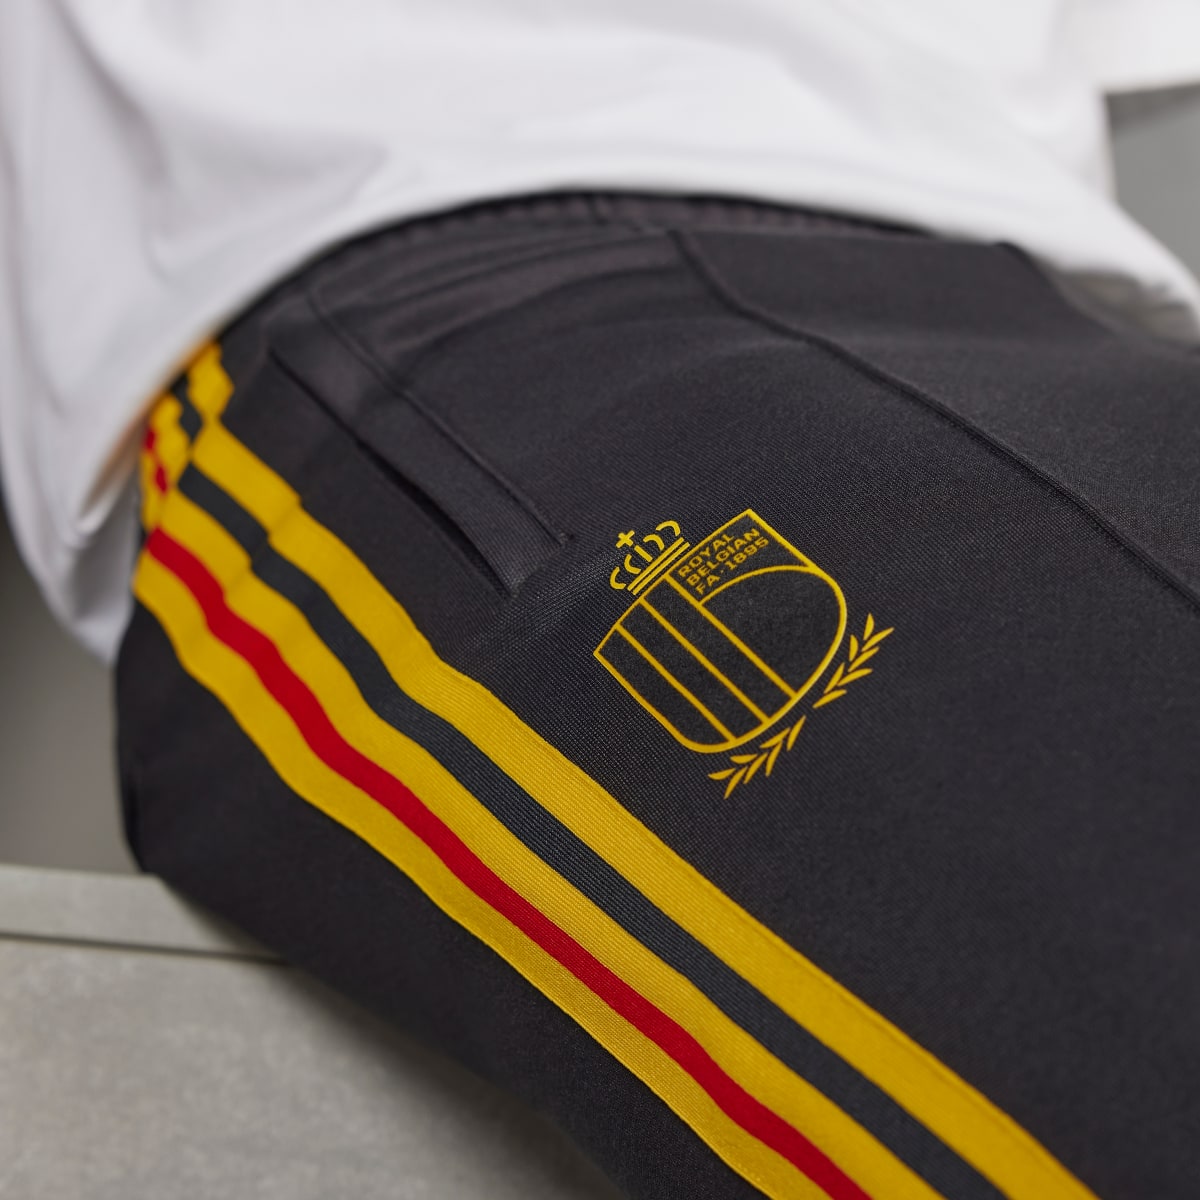 Adidas Pantalon de survêtement Belgique Beckenbauer. 7